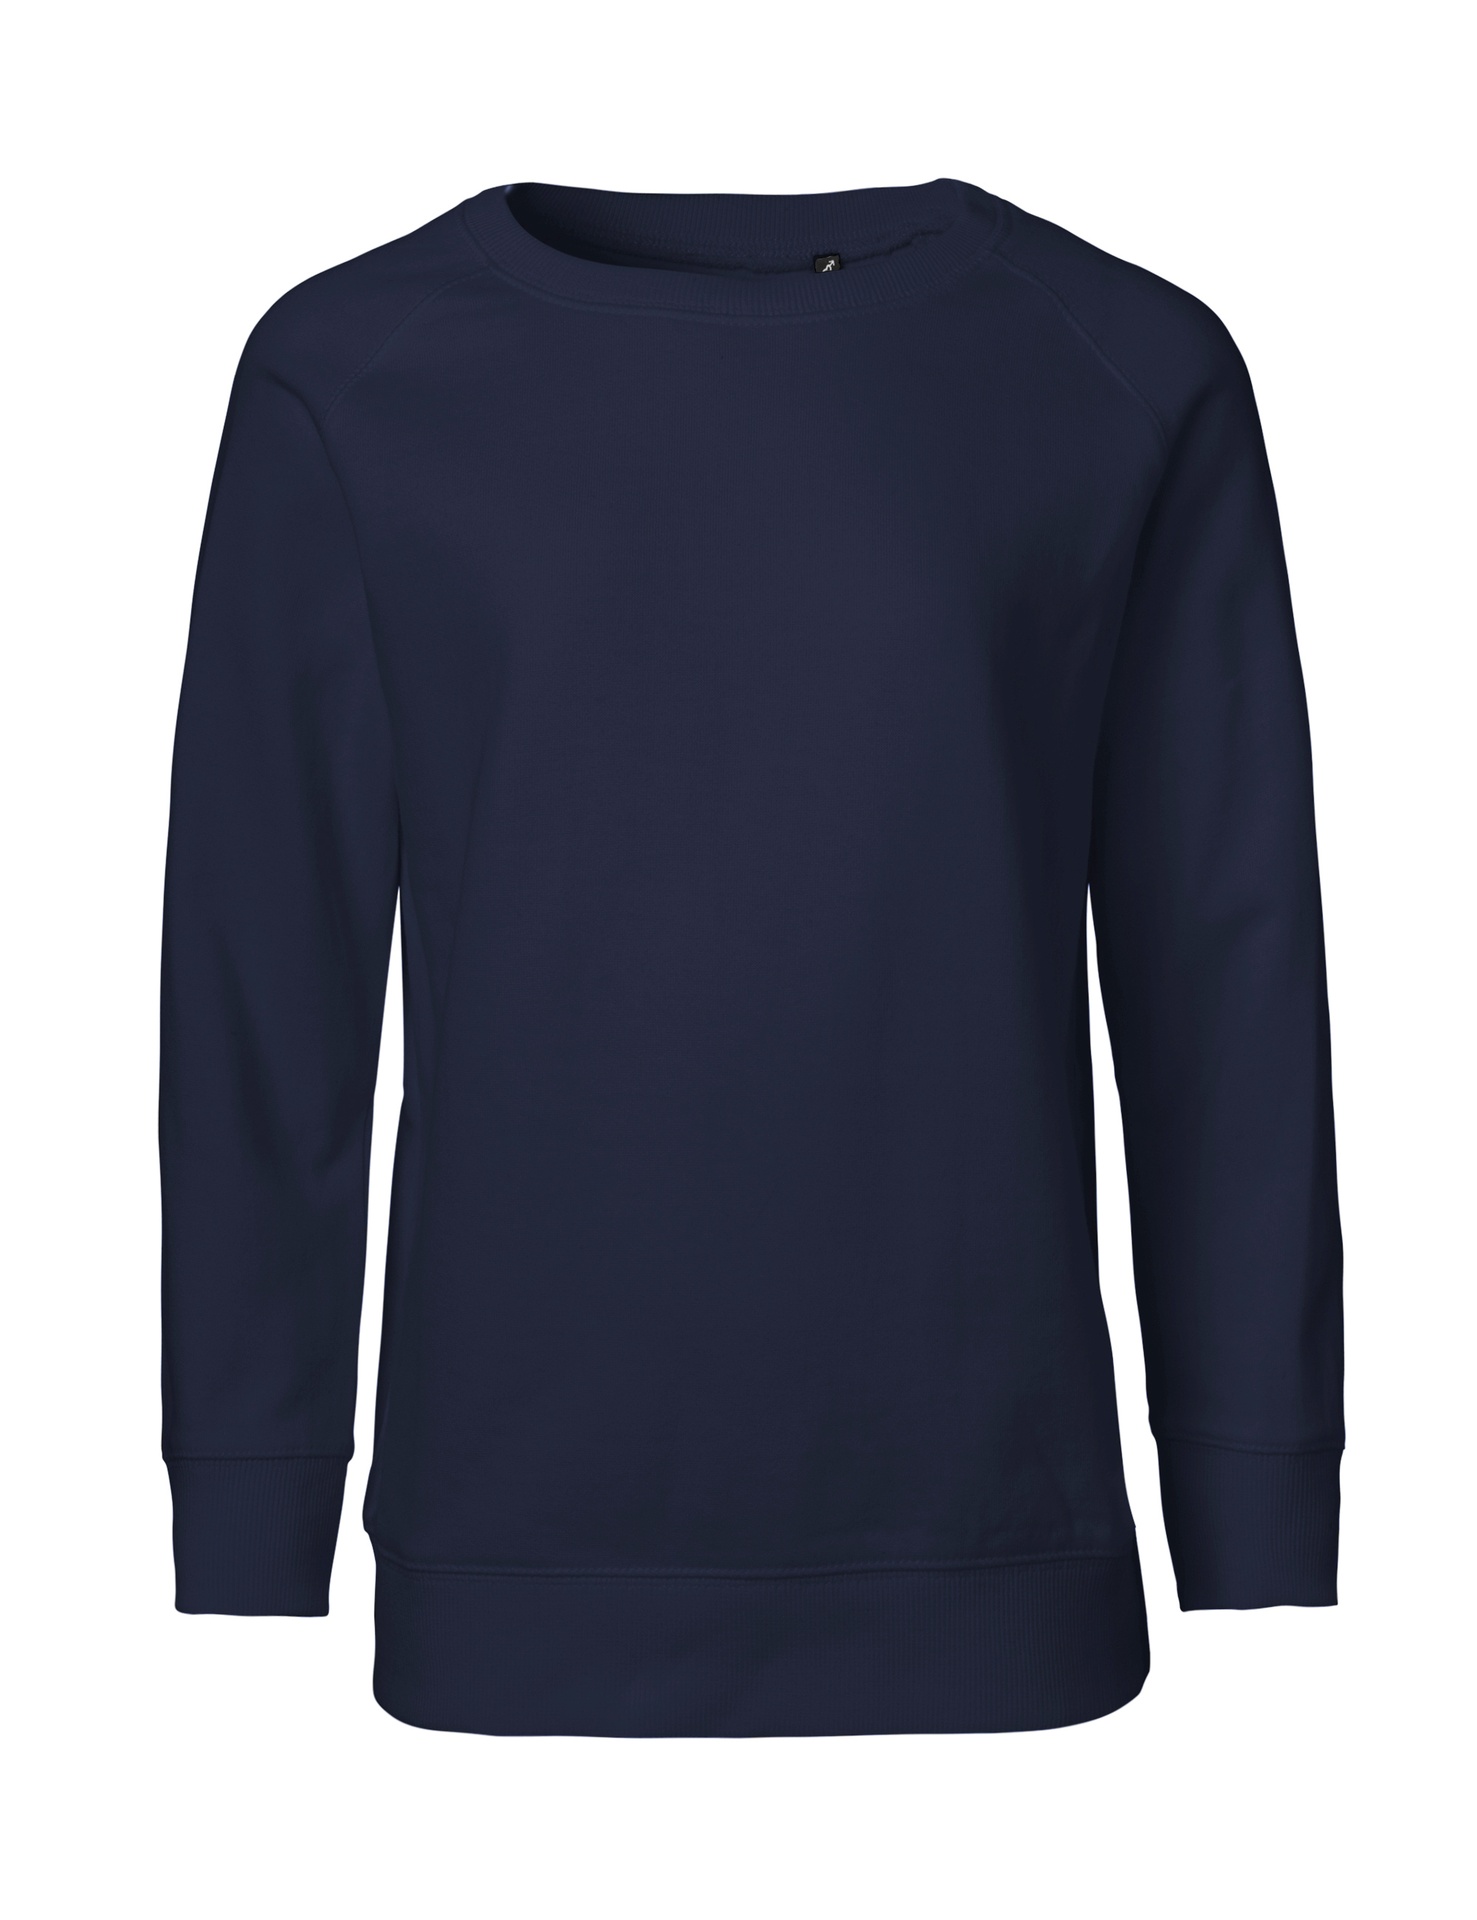 [PR/05529] Kids Sweatshirt (Navy 04, 104/110 cm)